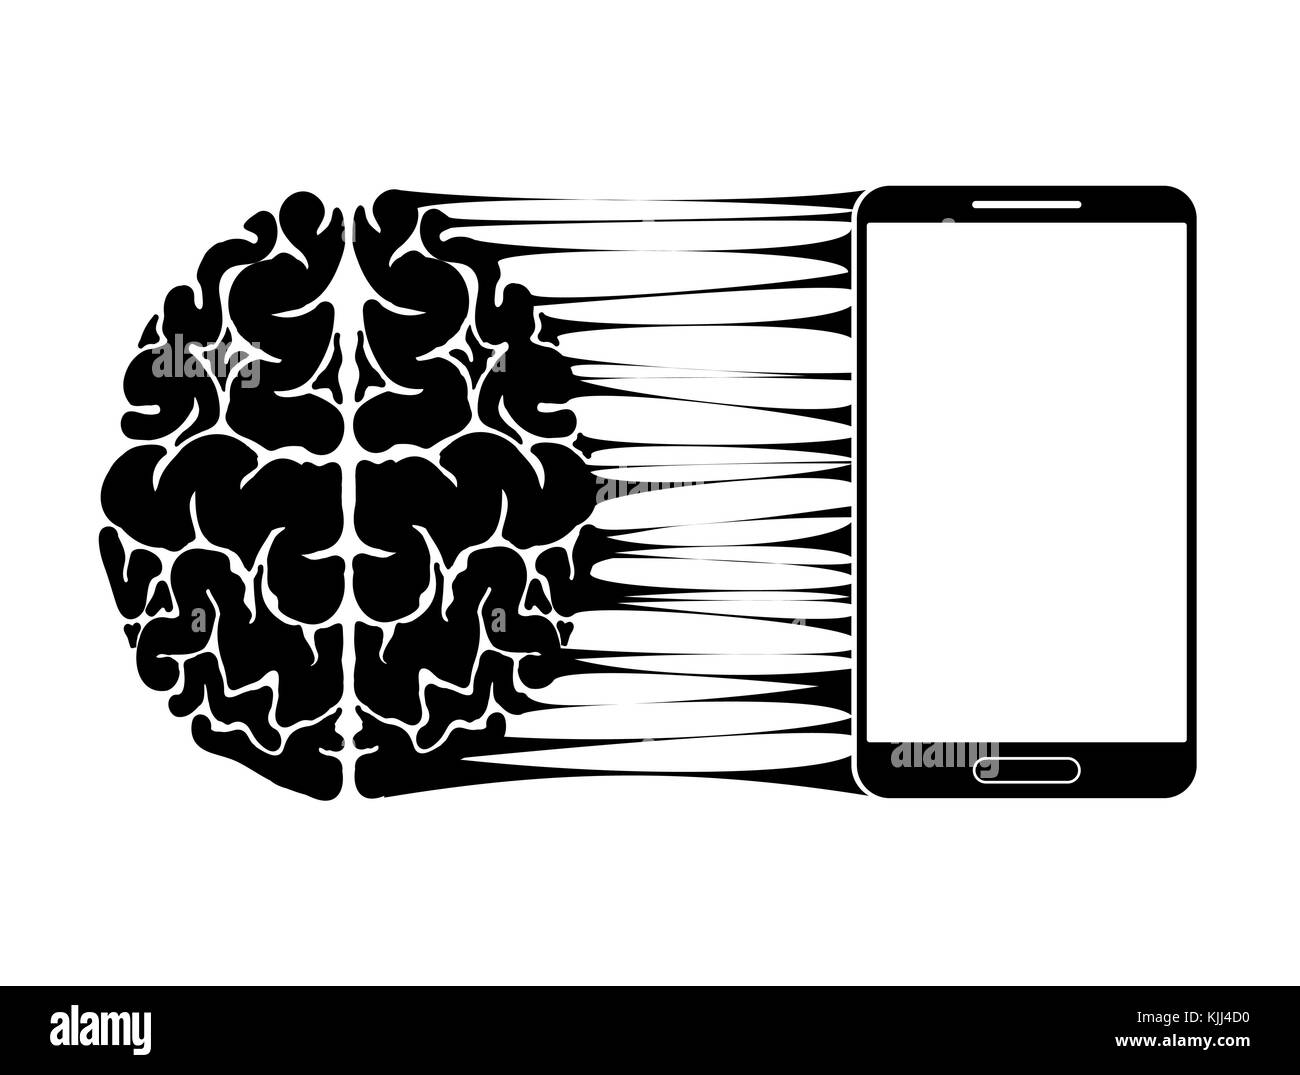 Eine konzeptionelle Zeichen oder das Logo zeigt eine Person s Abhängigkeit auf einem Smartphone, Gadget oder das Internet. starke Kommunikation des Gehirns und neue Technologien. Stock Vektor